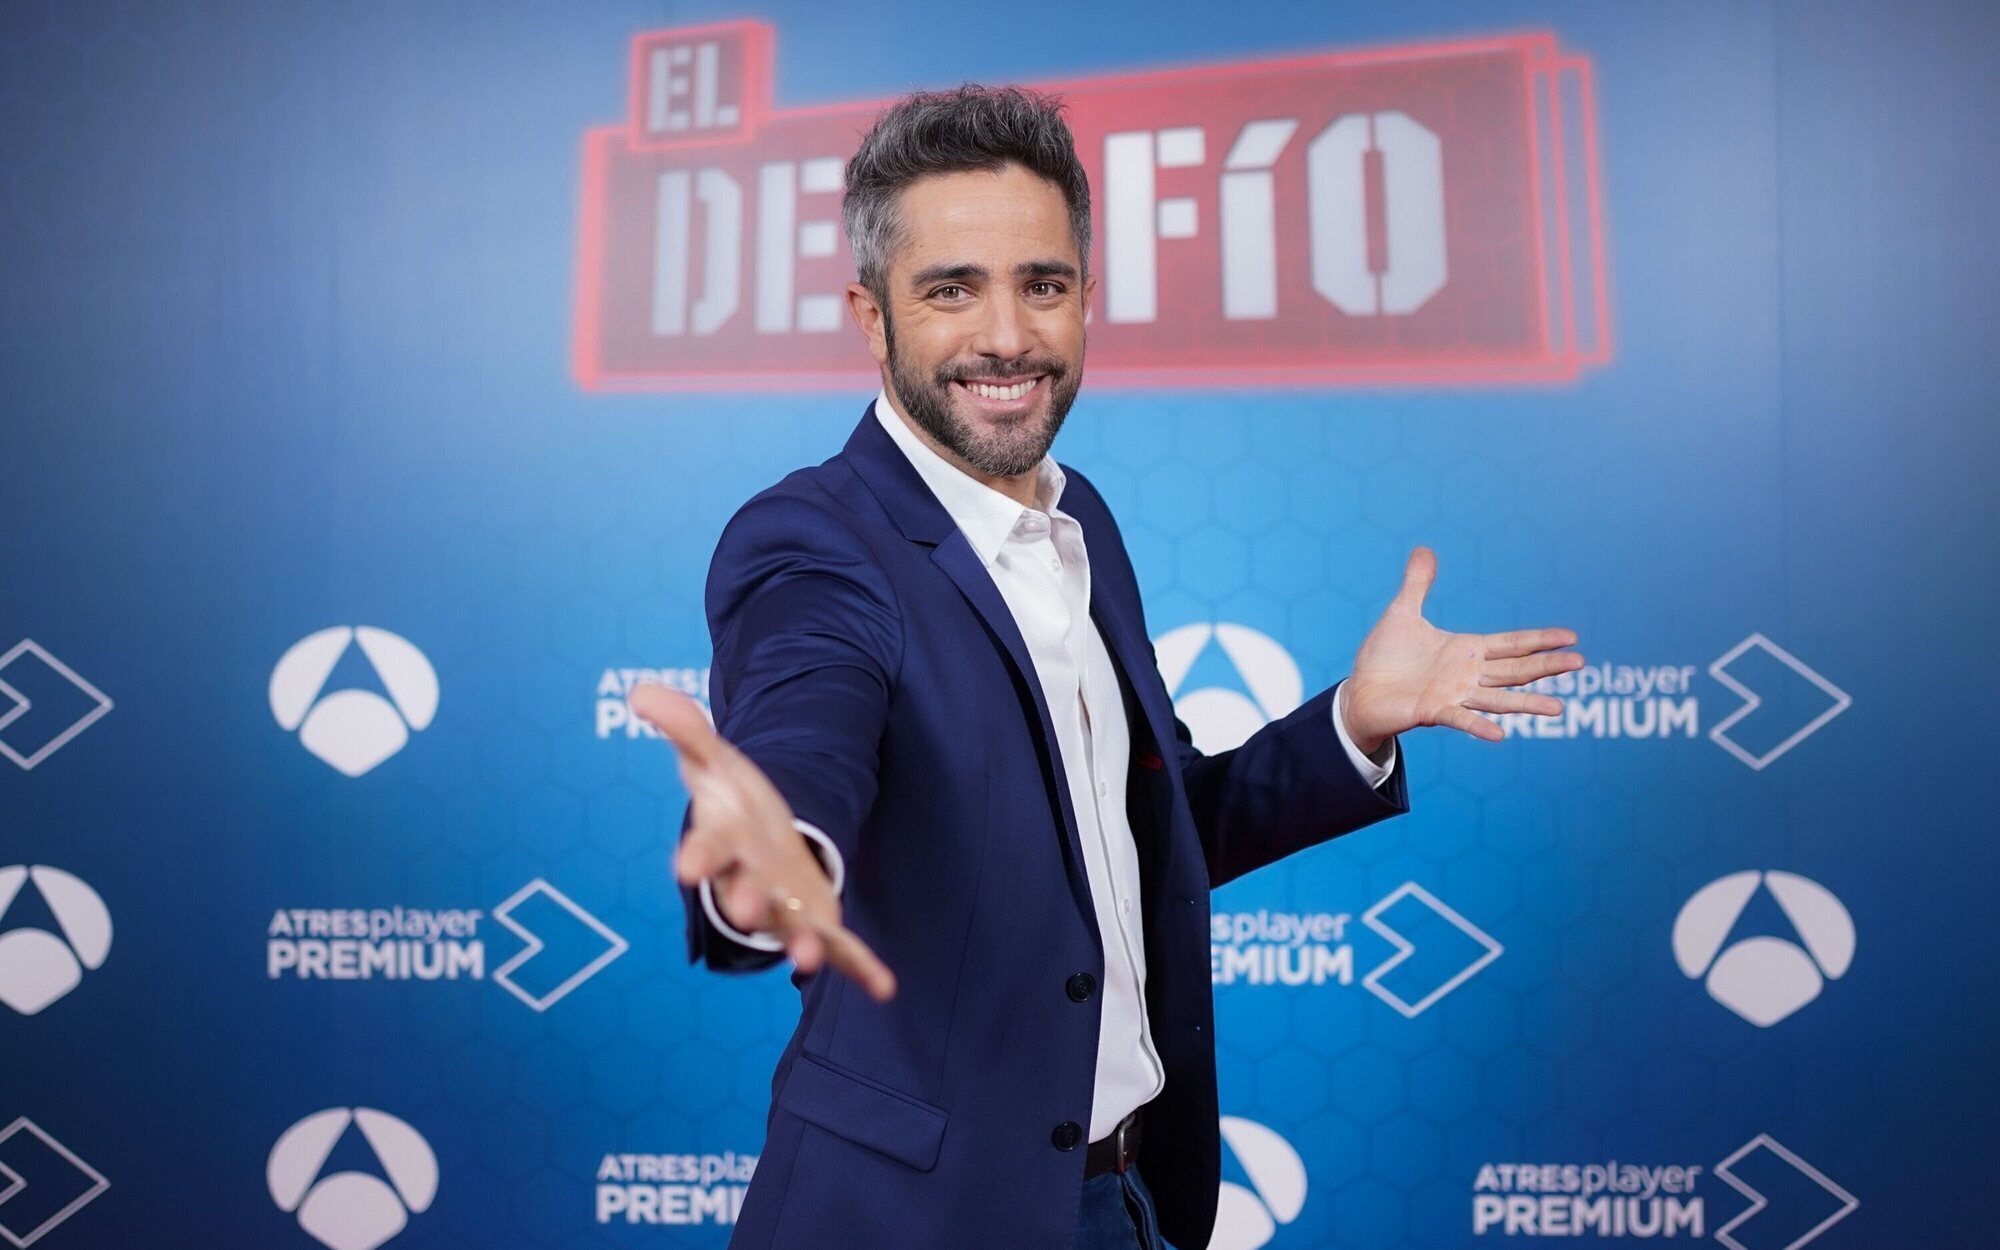 Antena 3 presenta las novedades de la segunda edición de 'El desafío' y sus posibilidades fuera de España